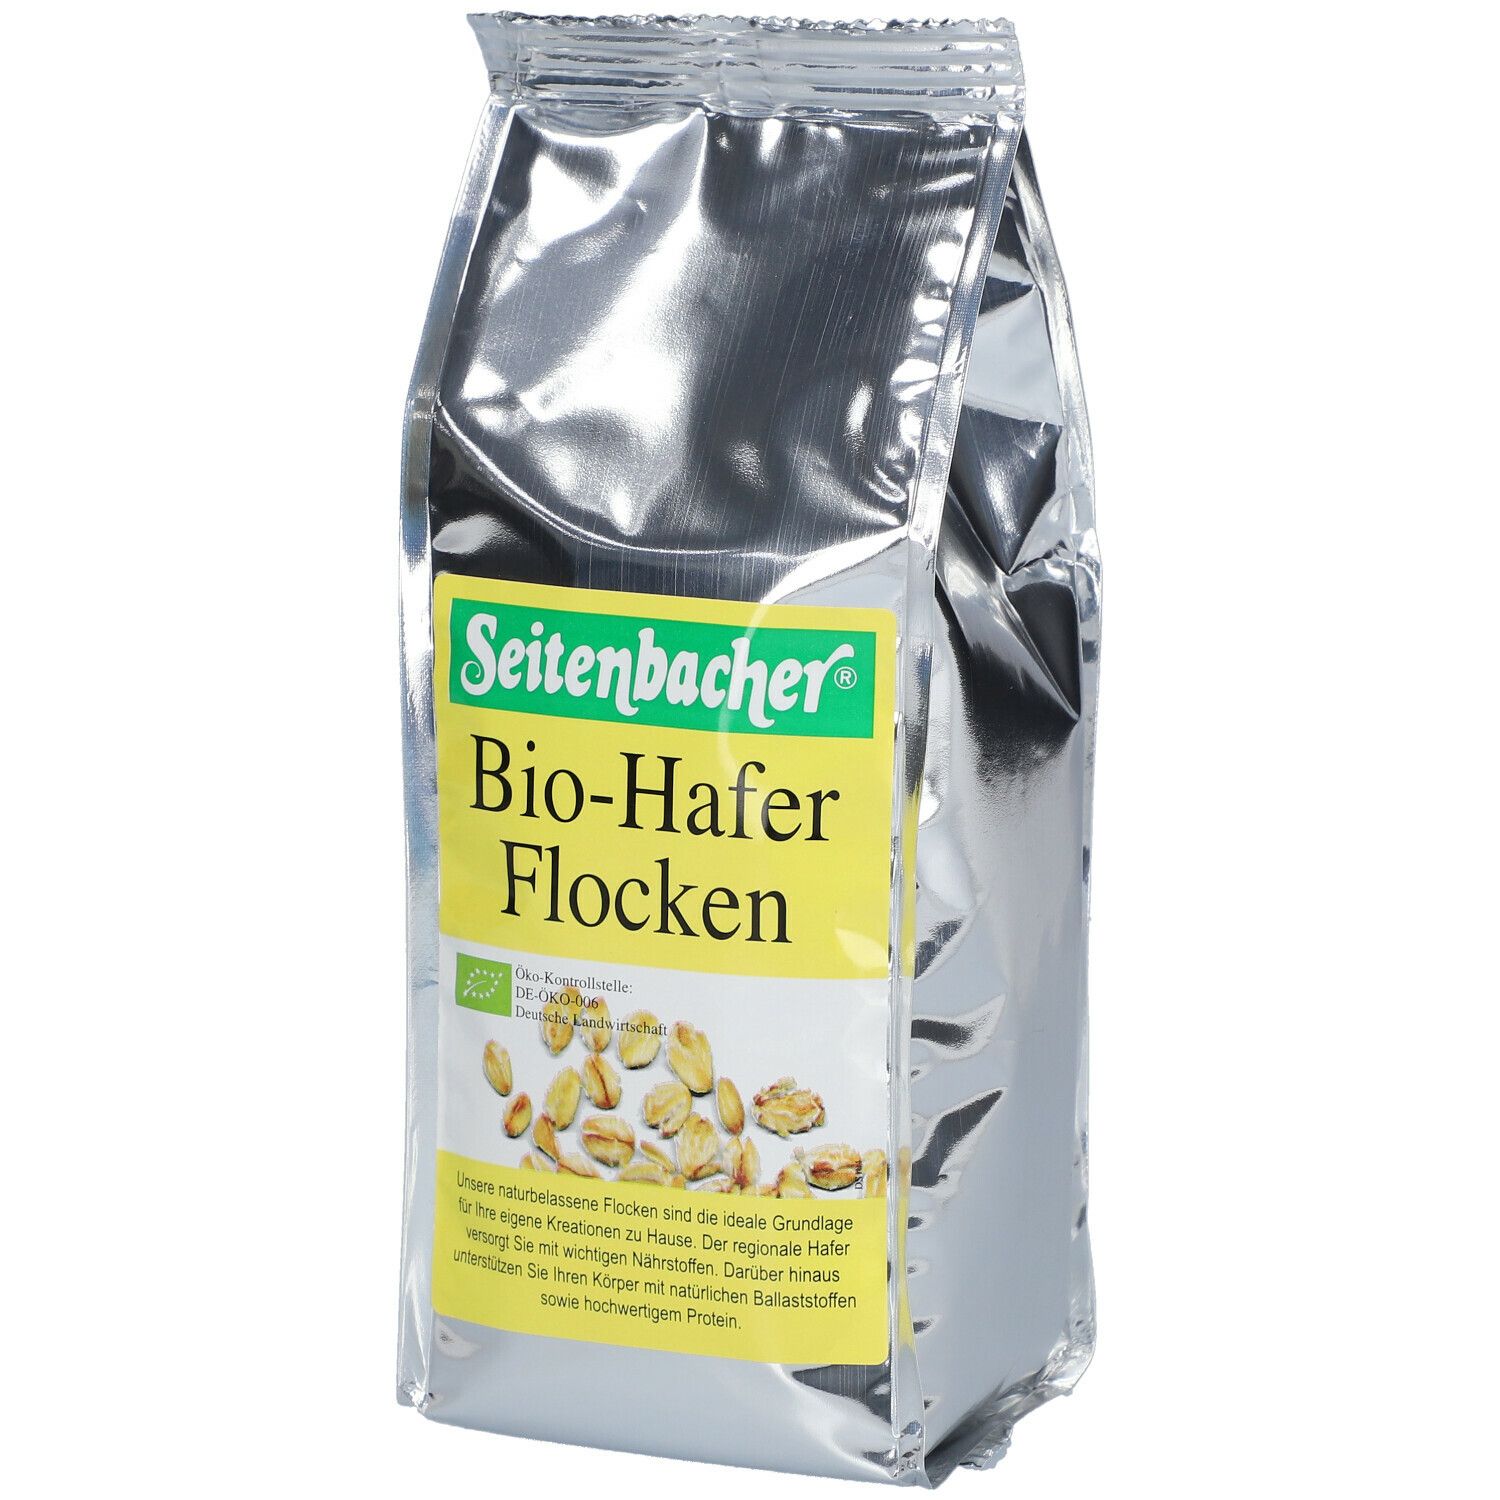 Seitenbacher® Bio-Hafer Flocken